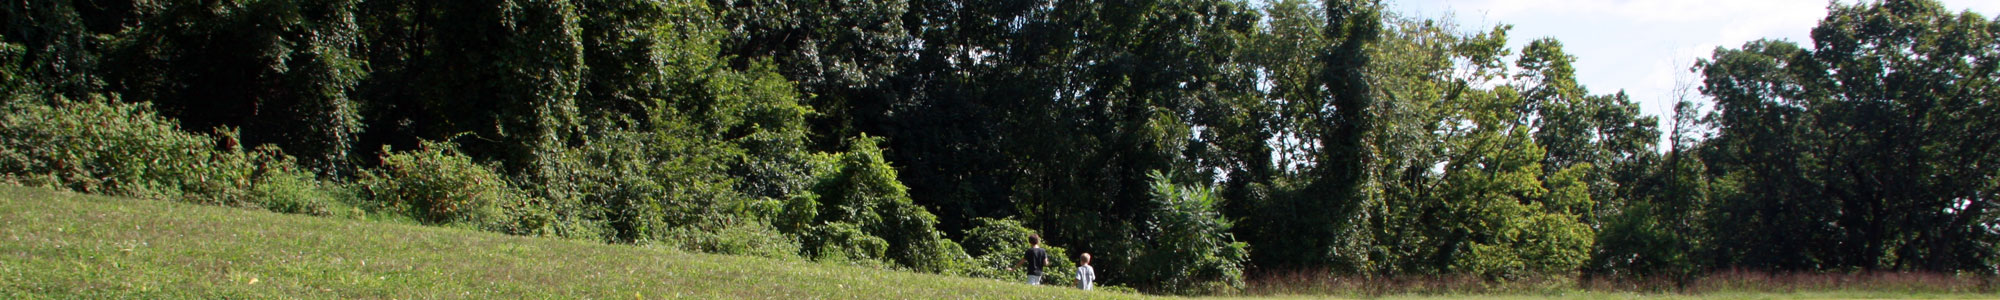 Two tween boys walk through a green field